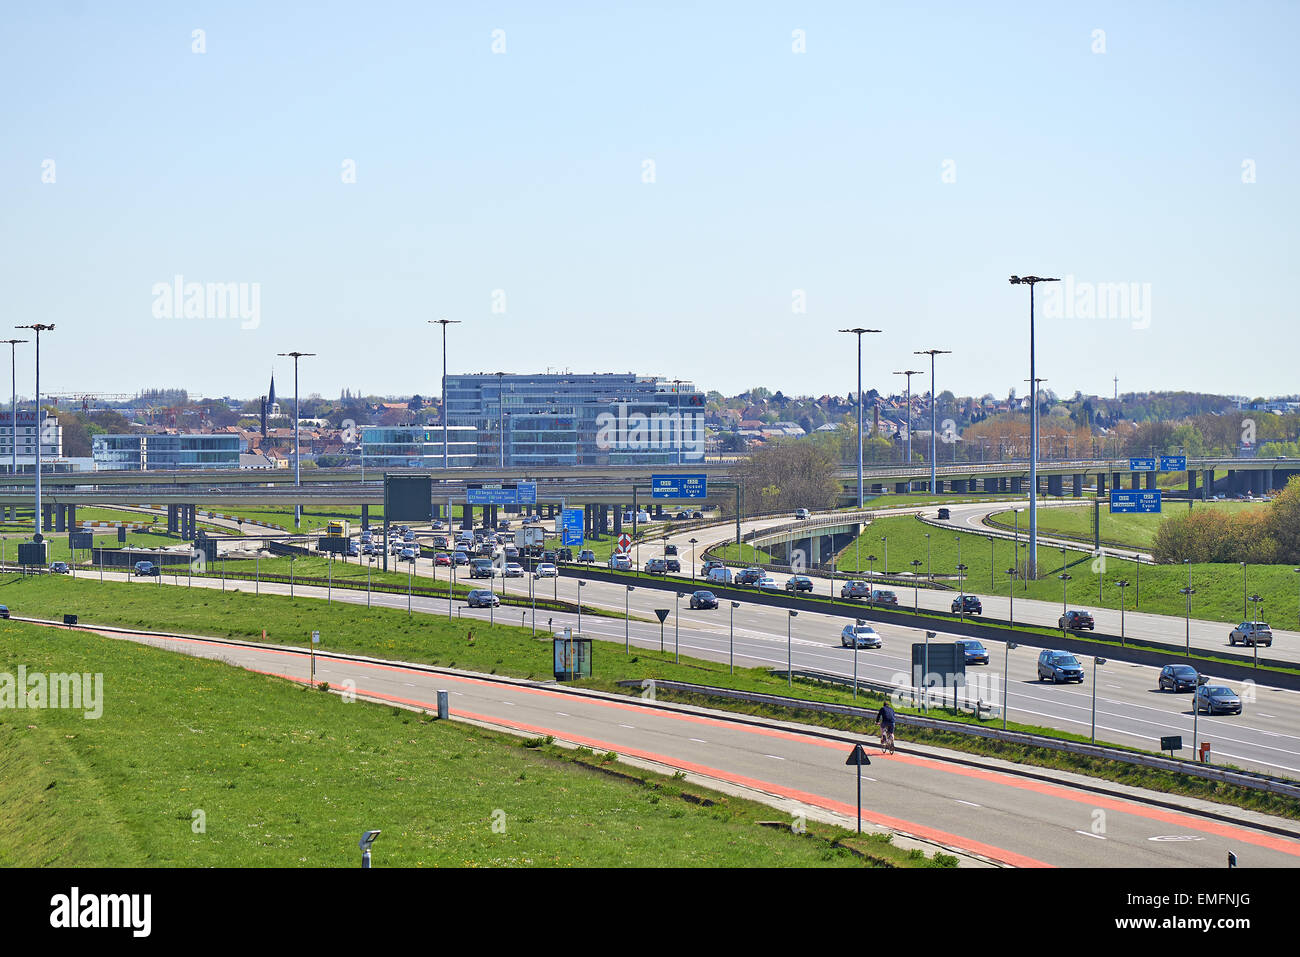 Brüssel, Belgien - 18. April 2015: Verkehr auf dem Brüsseler Ring von einem  sonnigen Tag in Diegem, Belgien Stockfotografie - Alamy